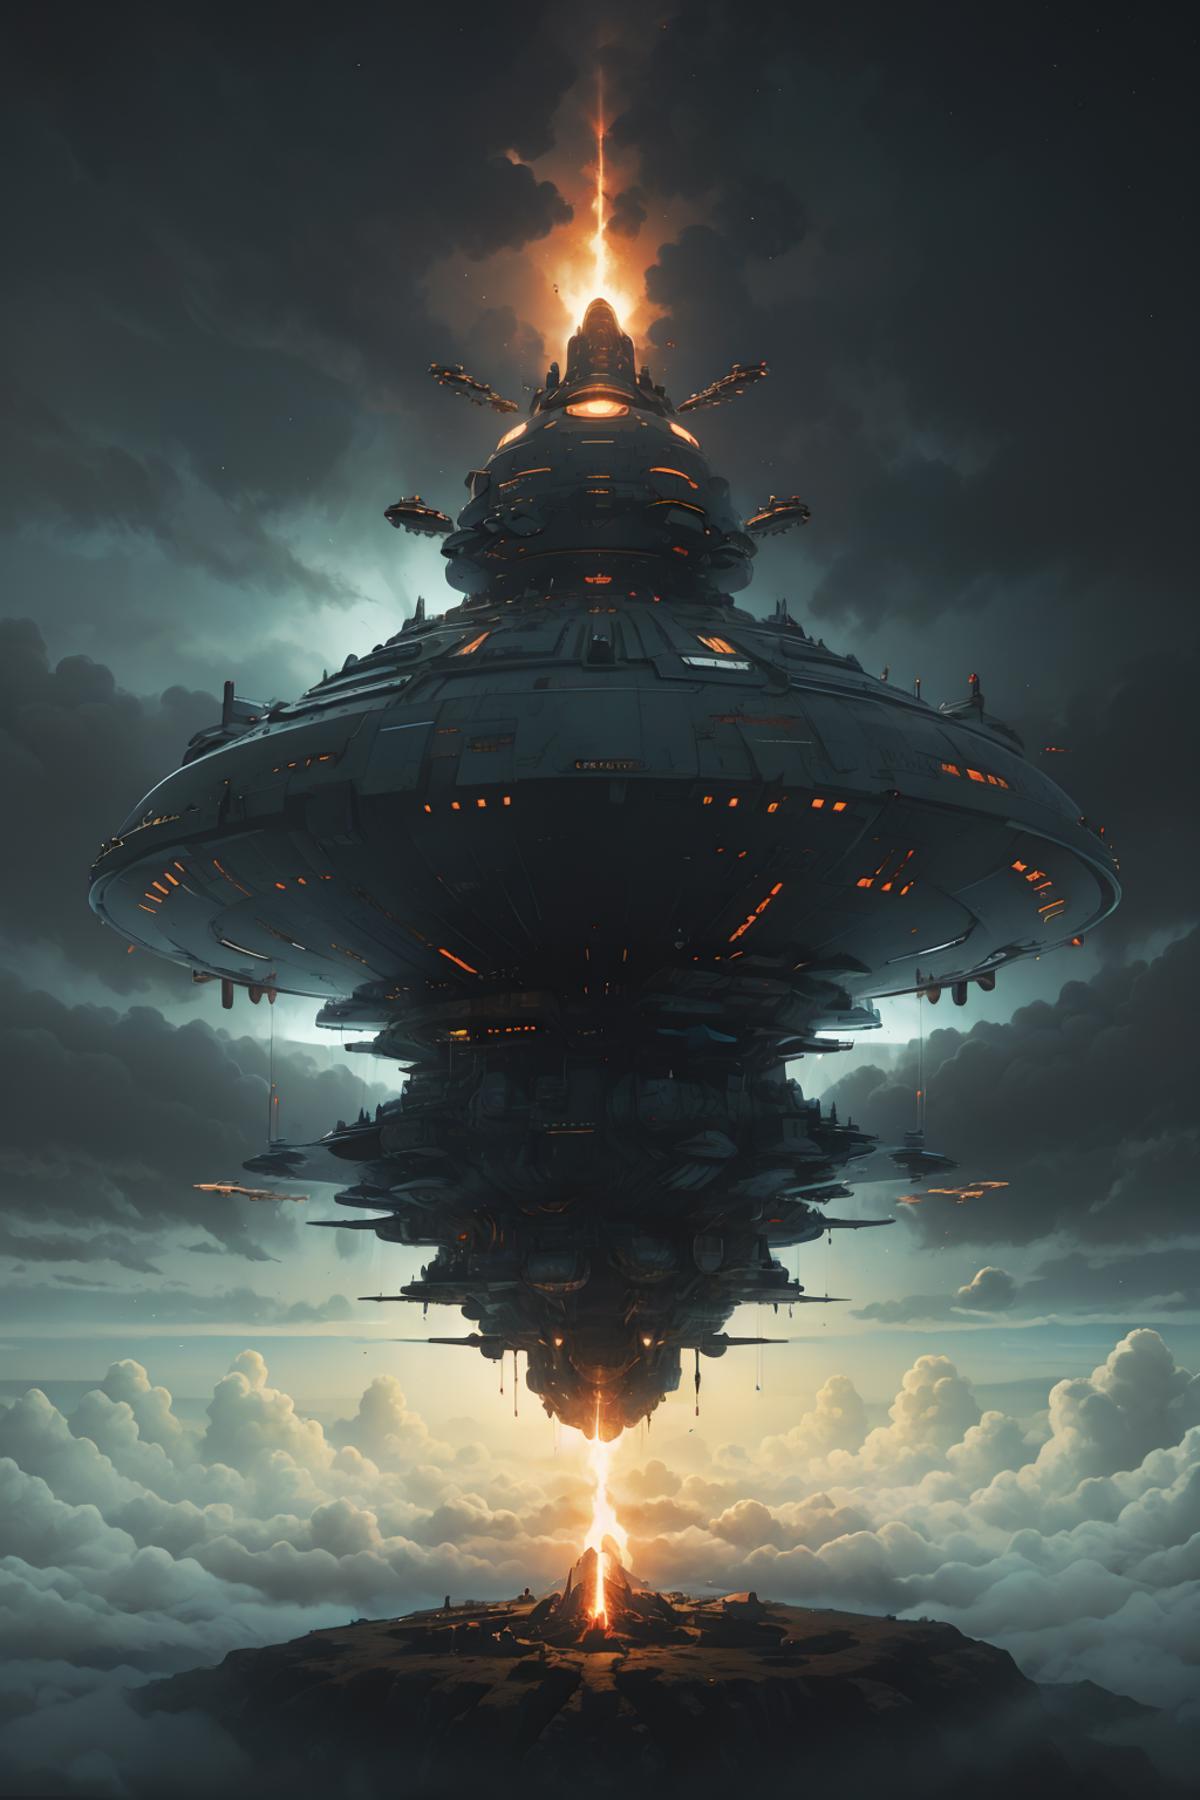  巨大飞空艇  Giant airship image by aistha